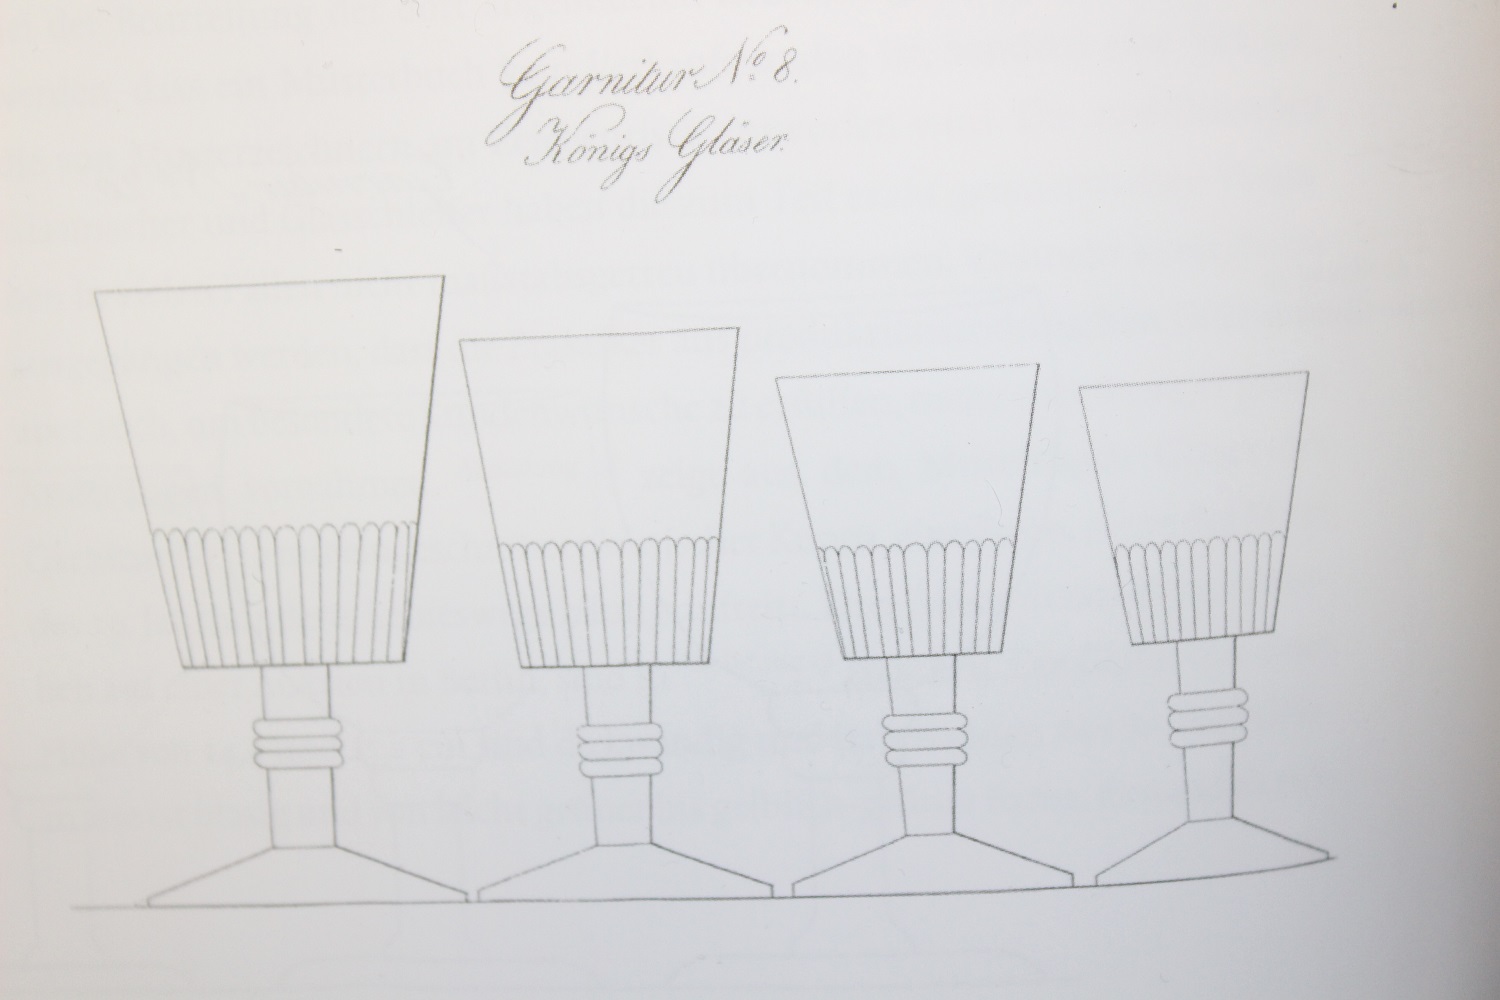 Produktverzeichnis Solms’sche Glasfabrik Baruth Mark, um 1860 (Museum Baruther Glashütte CC BY-NC-SA)